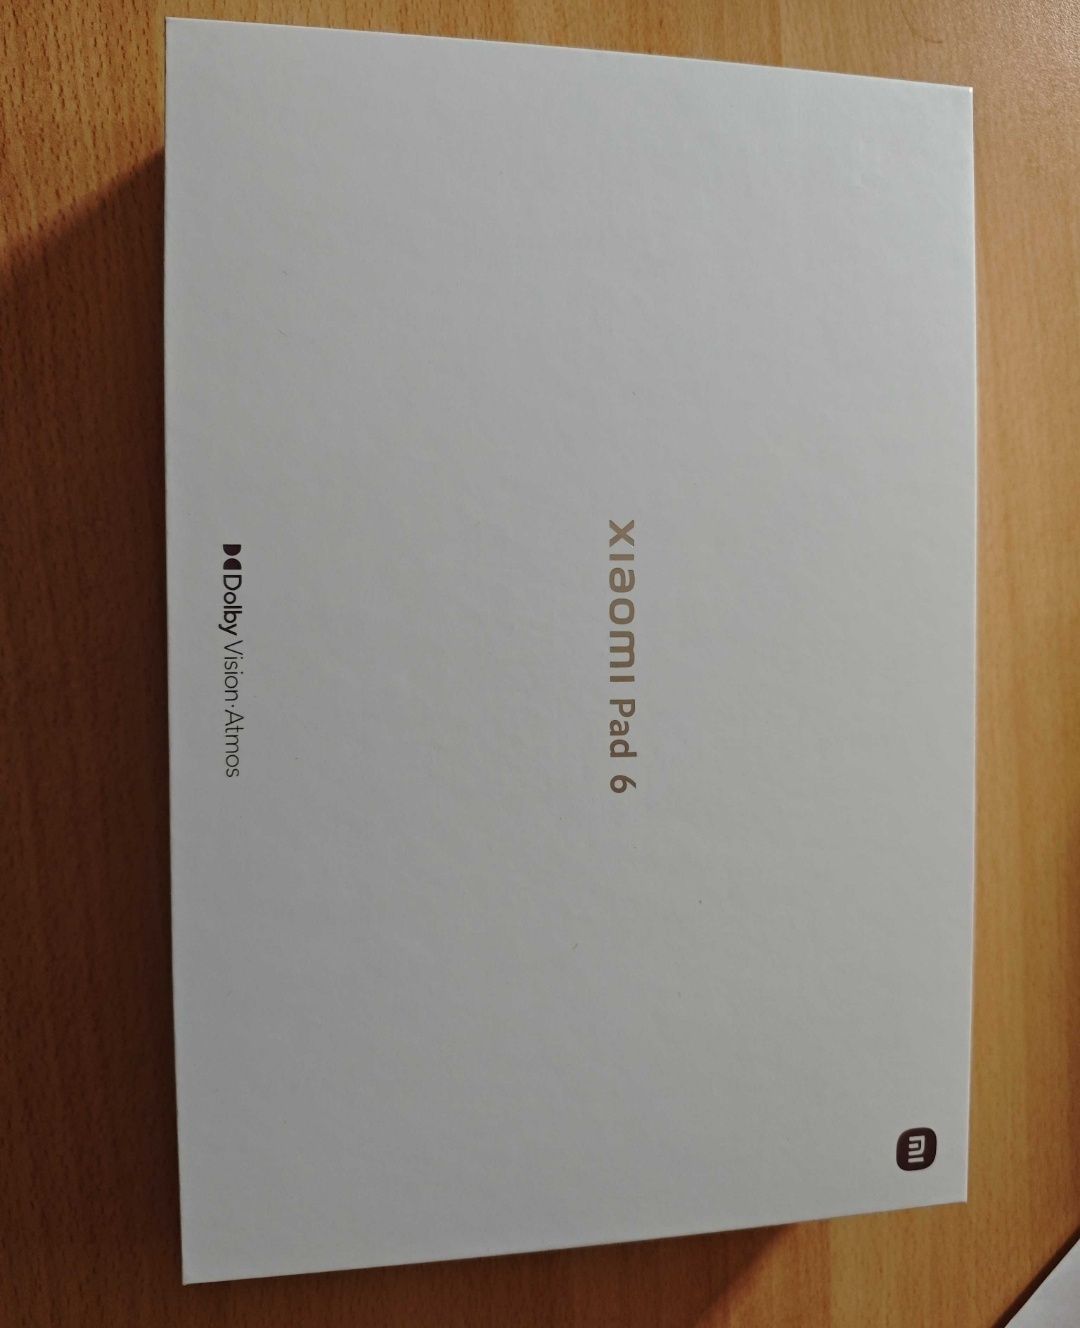 Zestaw : Xiaomi Pad 6 11''+ Etui Oryginał 8gb/256gb, 144hz